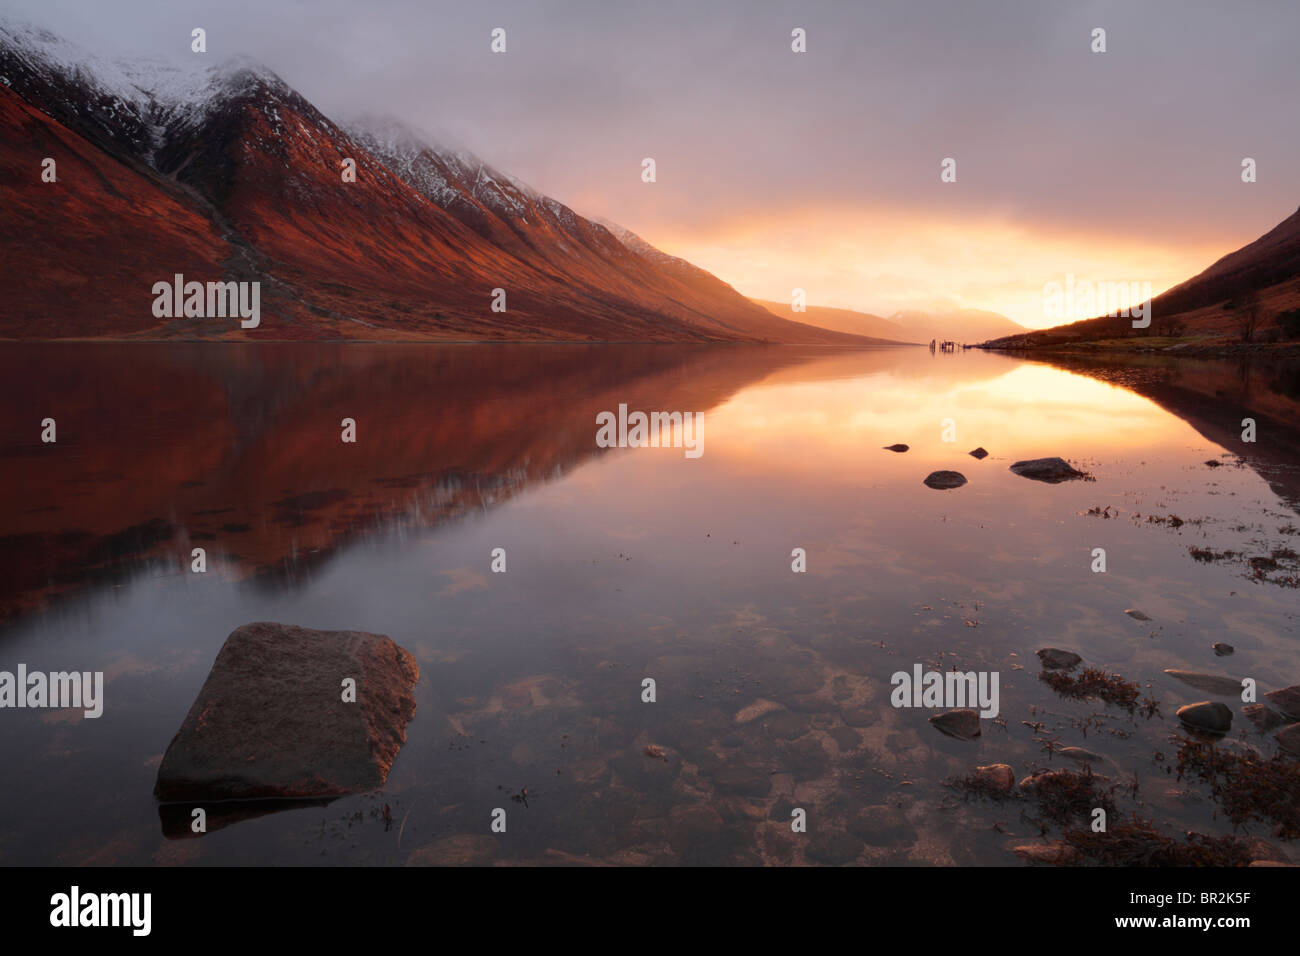 La lumière flamboyante d'un coucher de soleil d'hiver s'allume le Loch Etive dans les Highlands d'Ecosse Banque D'Images